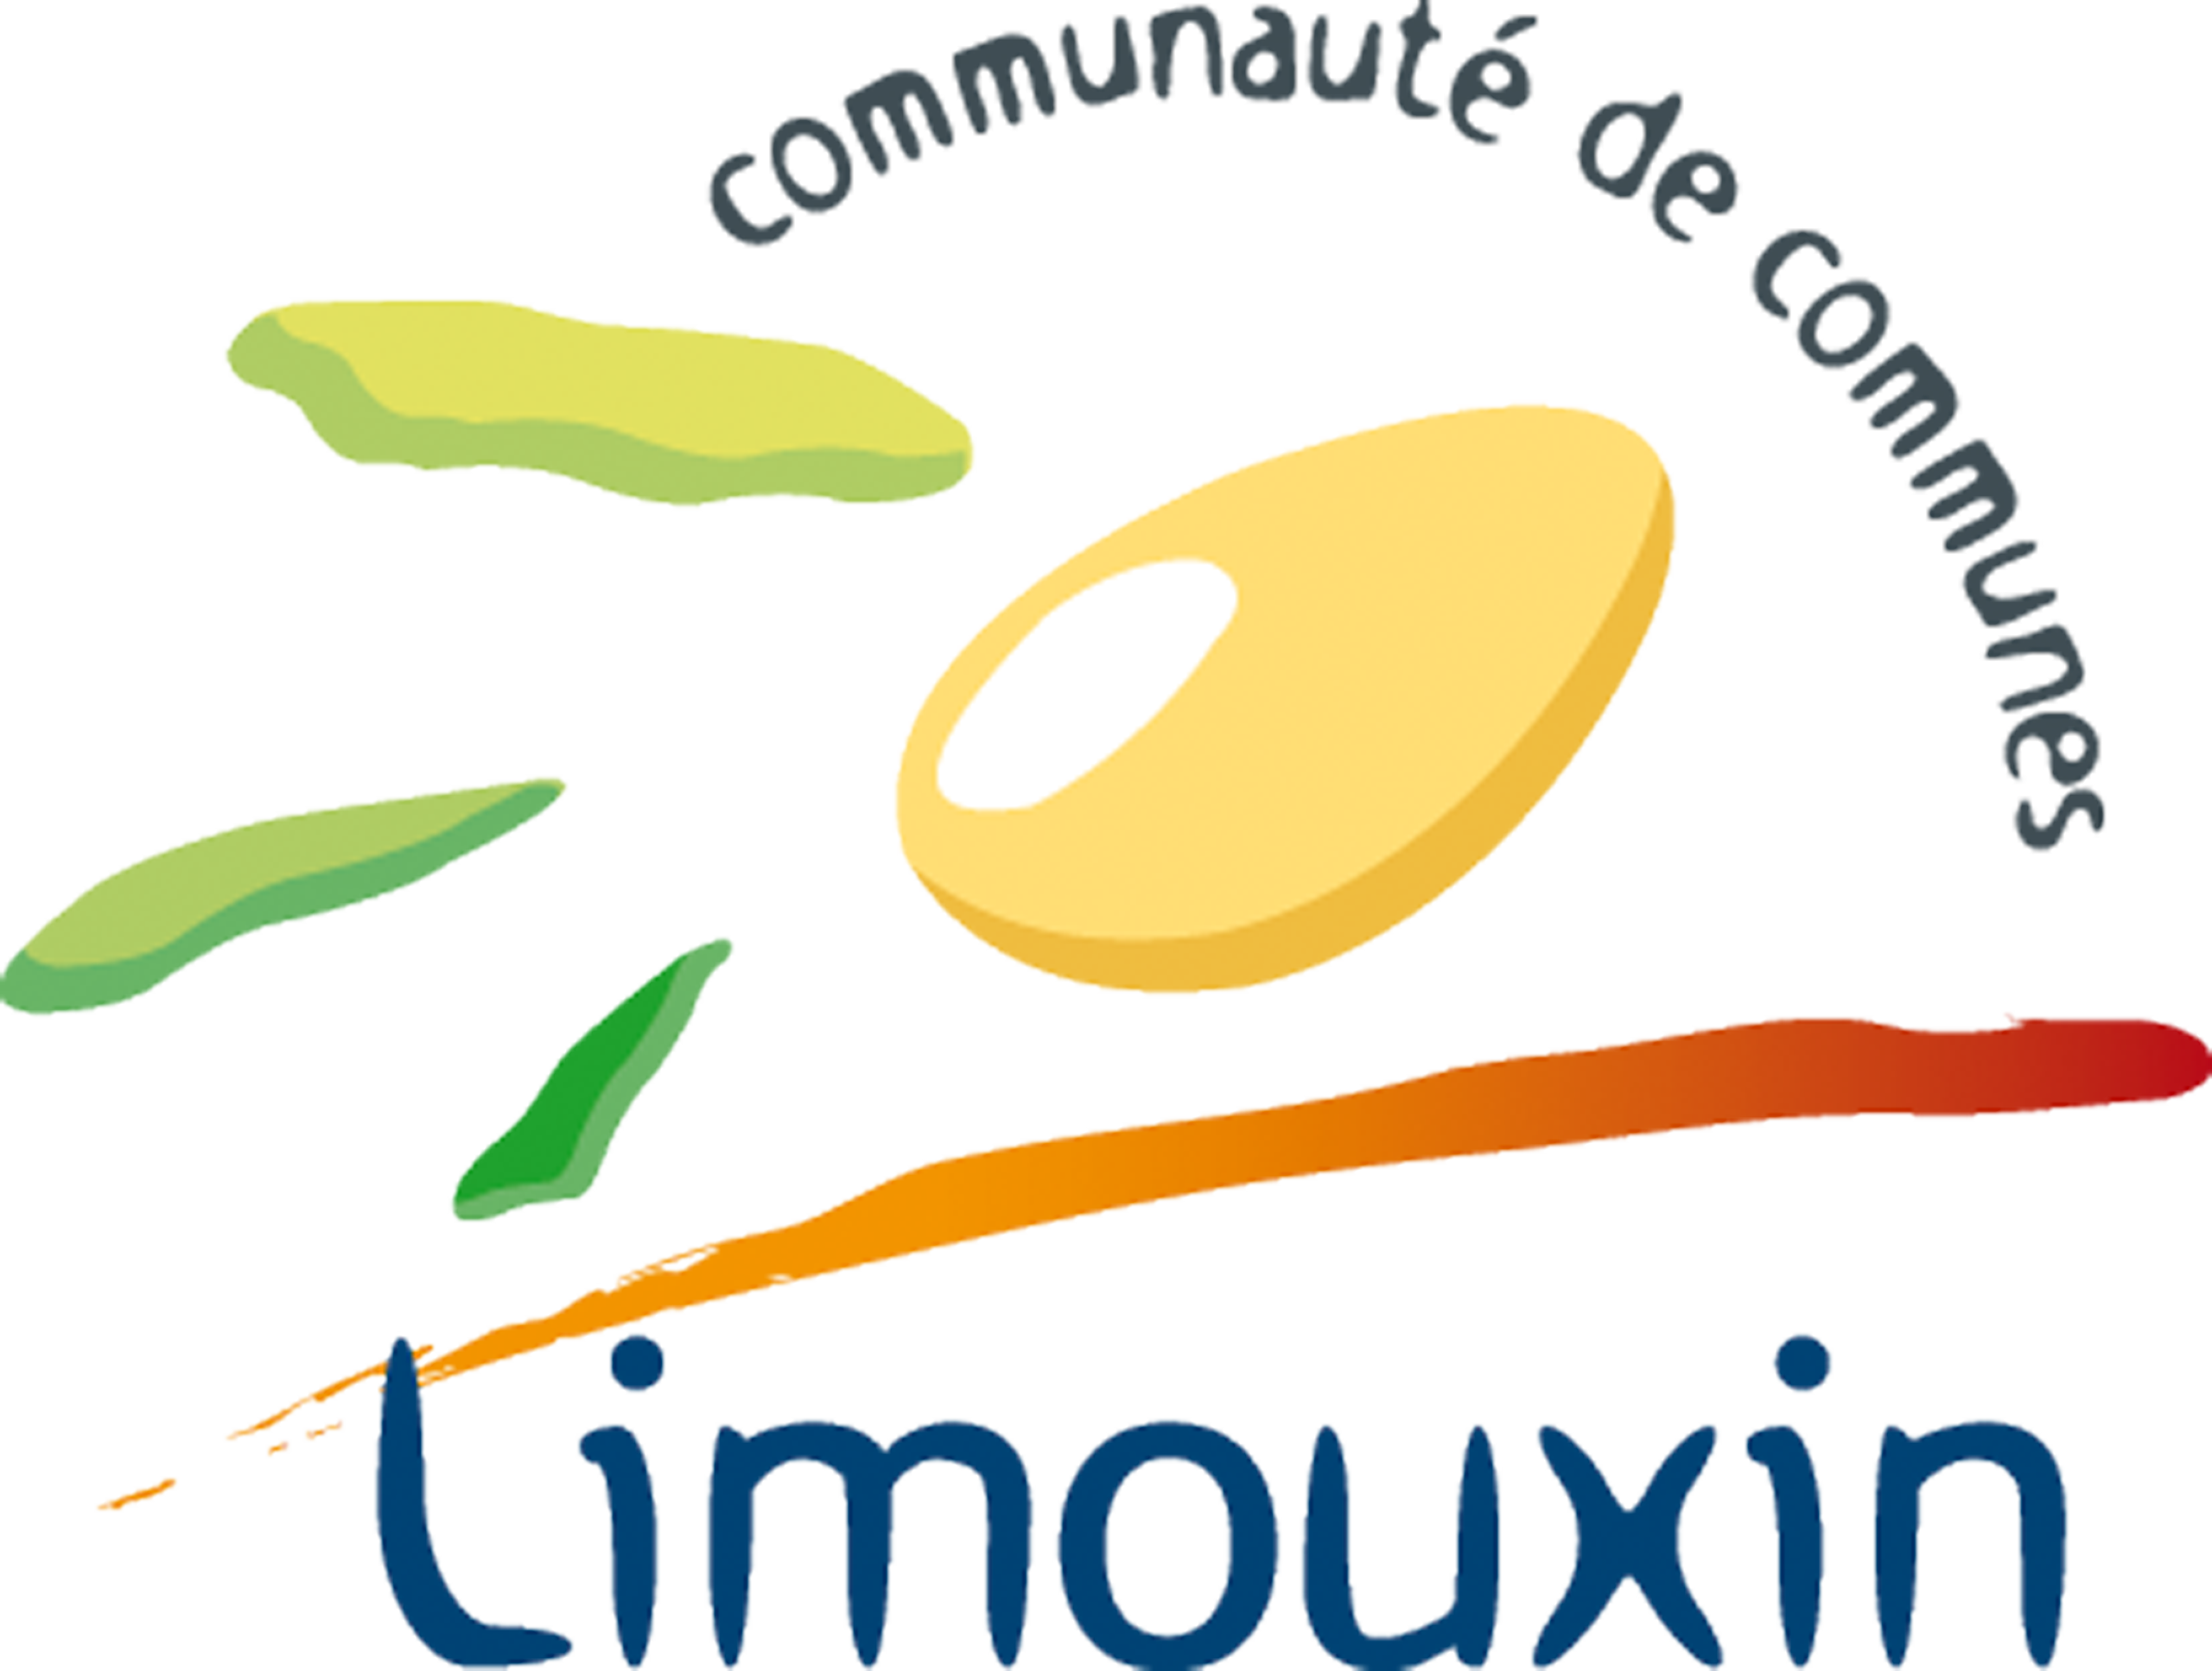 Commune-limouxsc